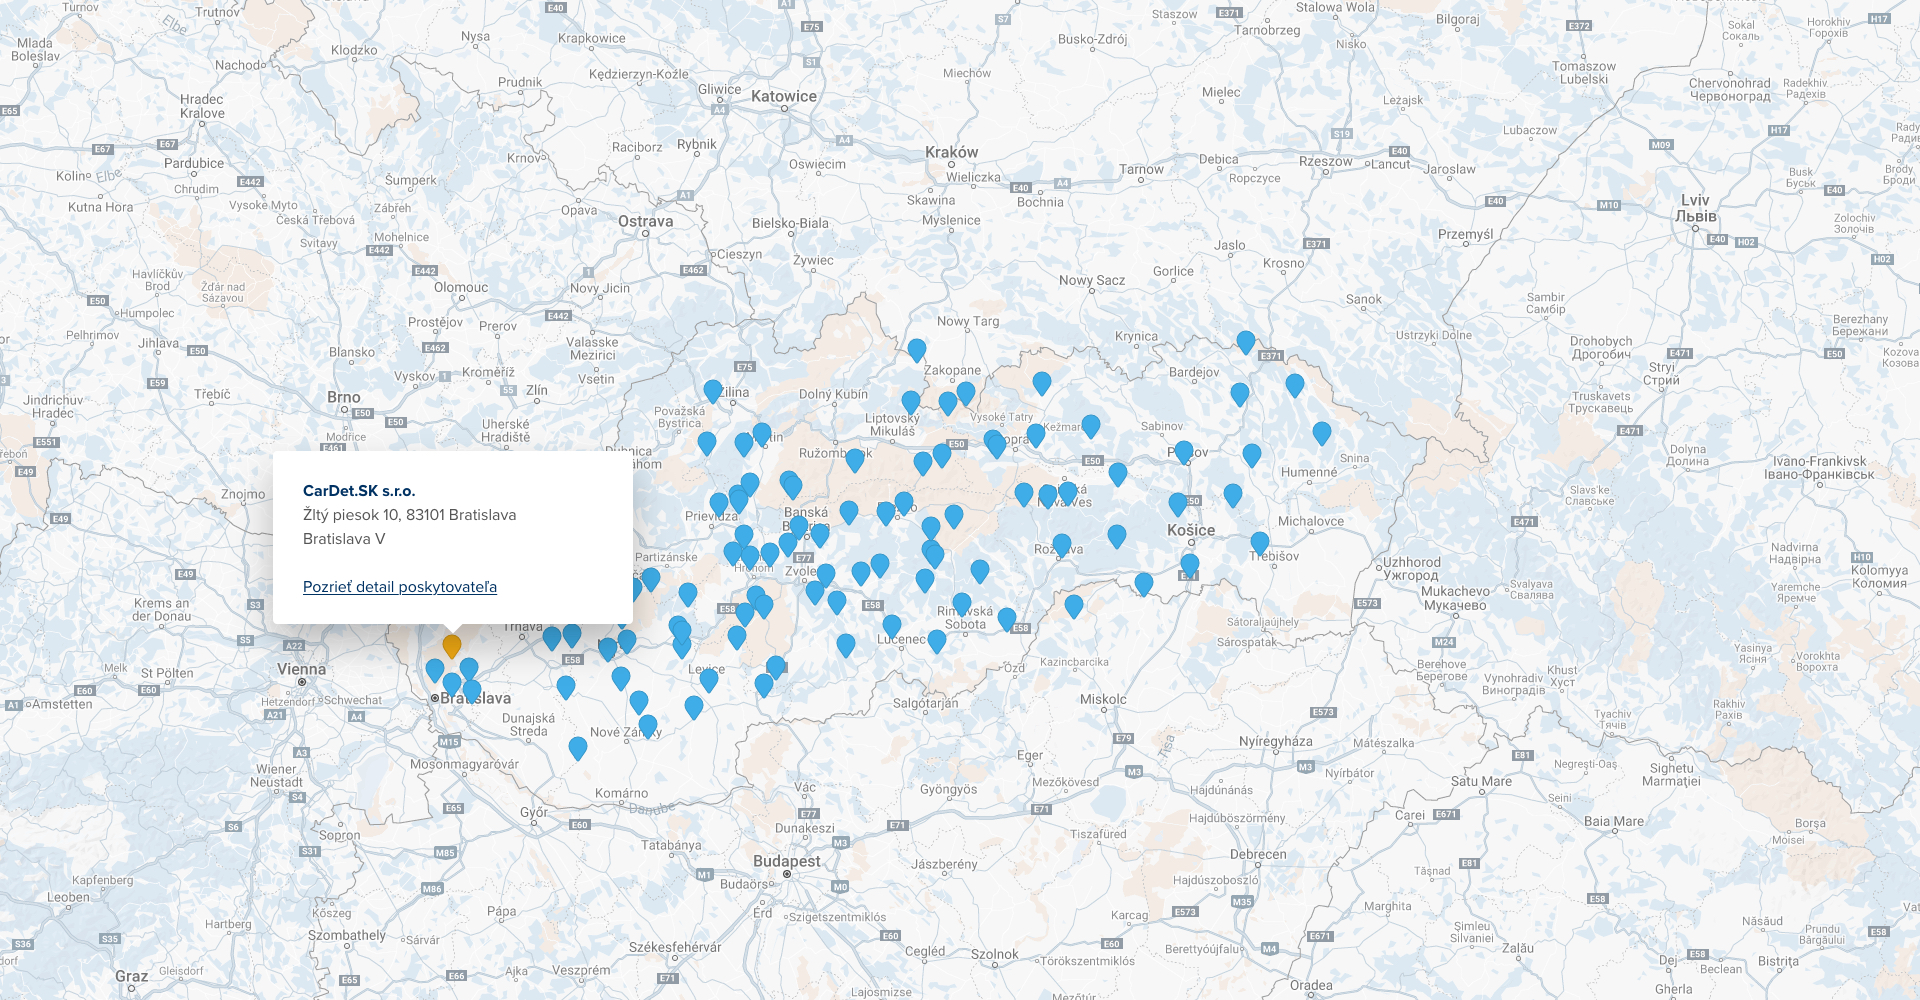 Mapa Slovenska s vyznačenými poskytovateľmi a detailom poskytovateľa údajov z RPZV.